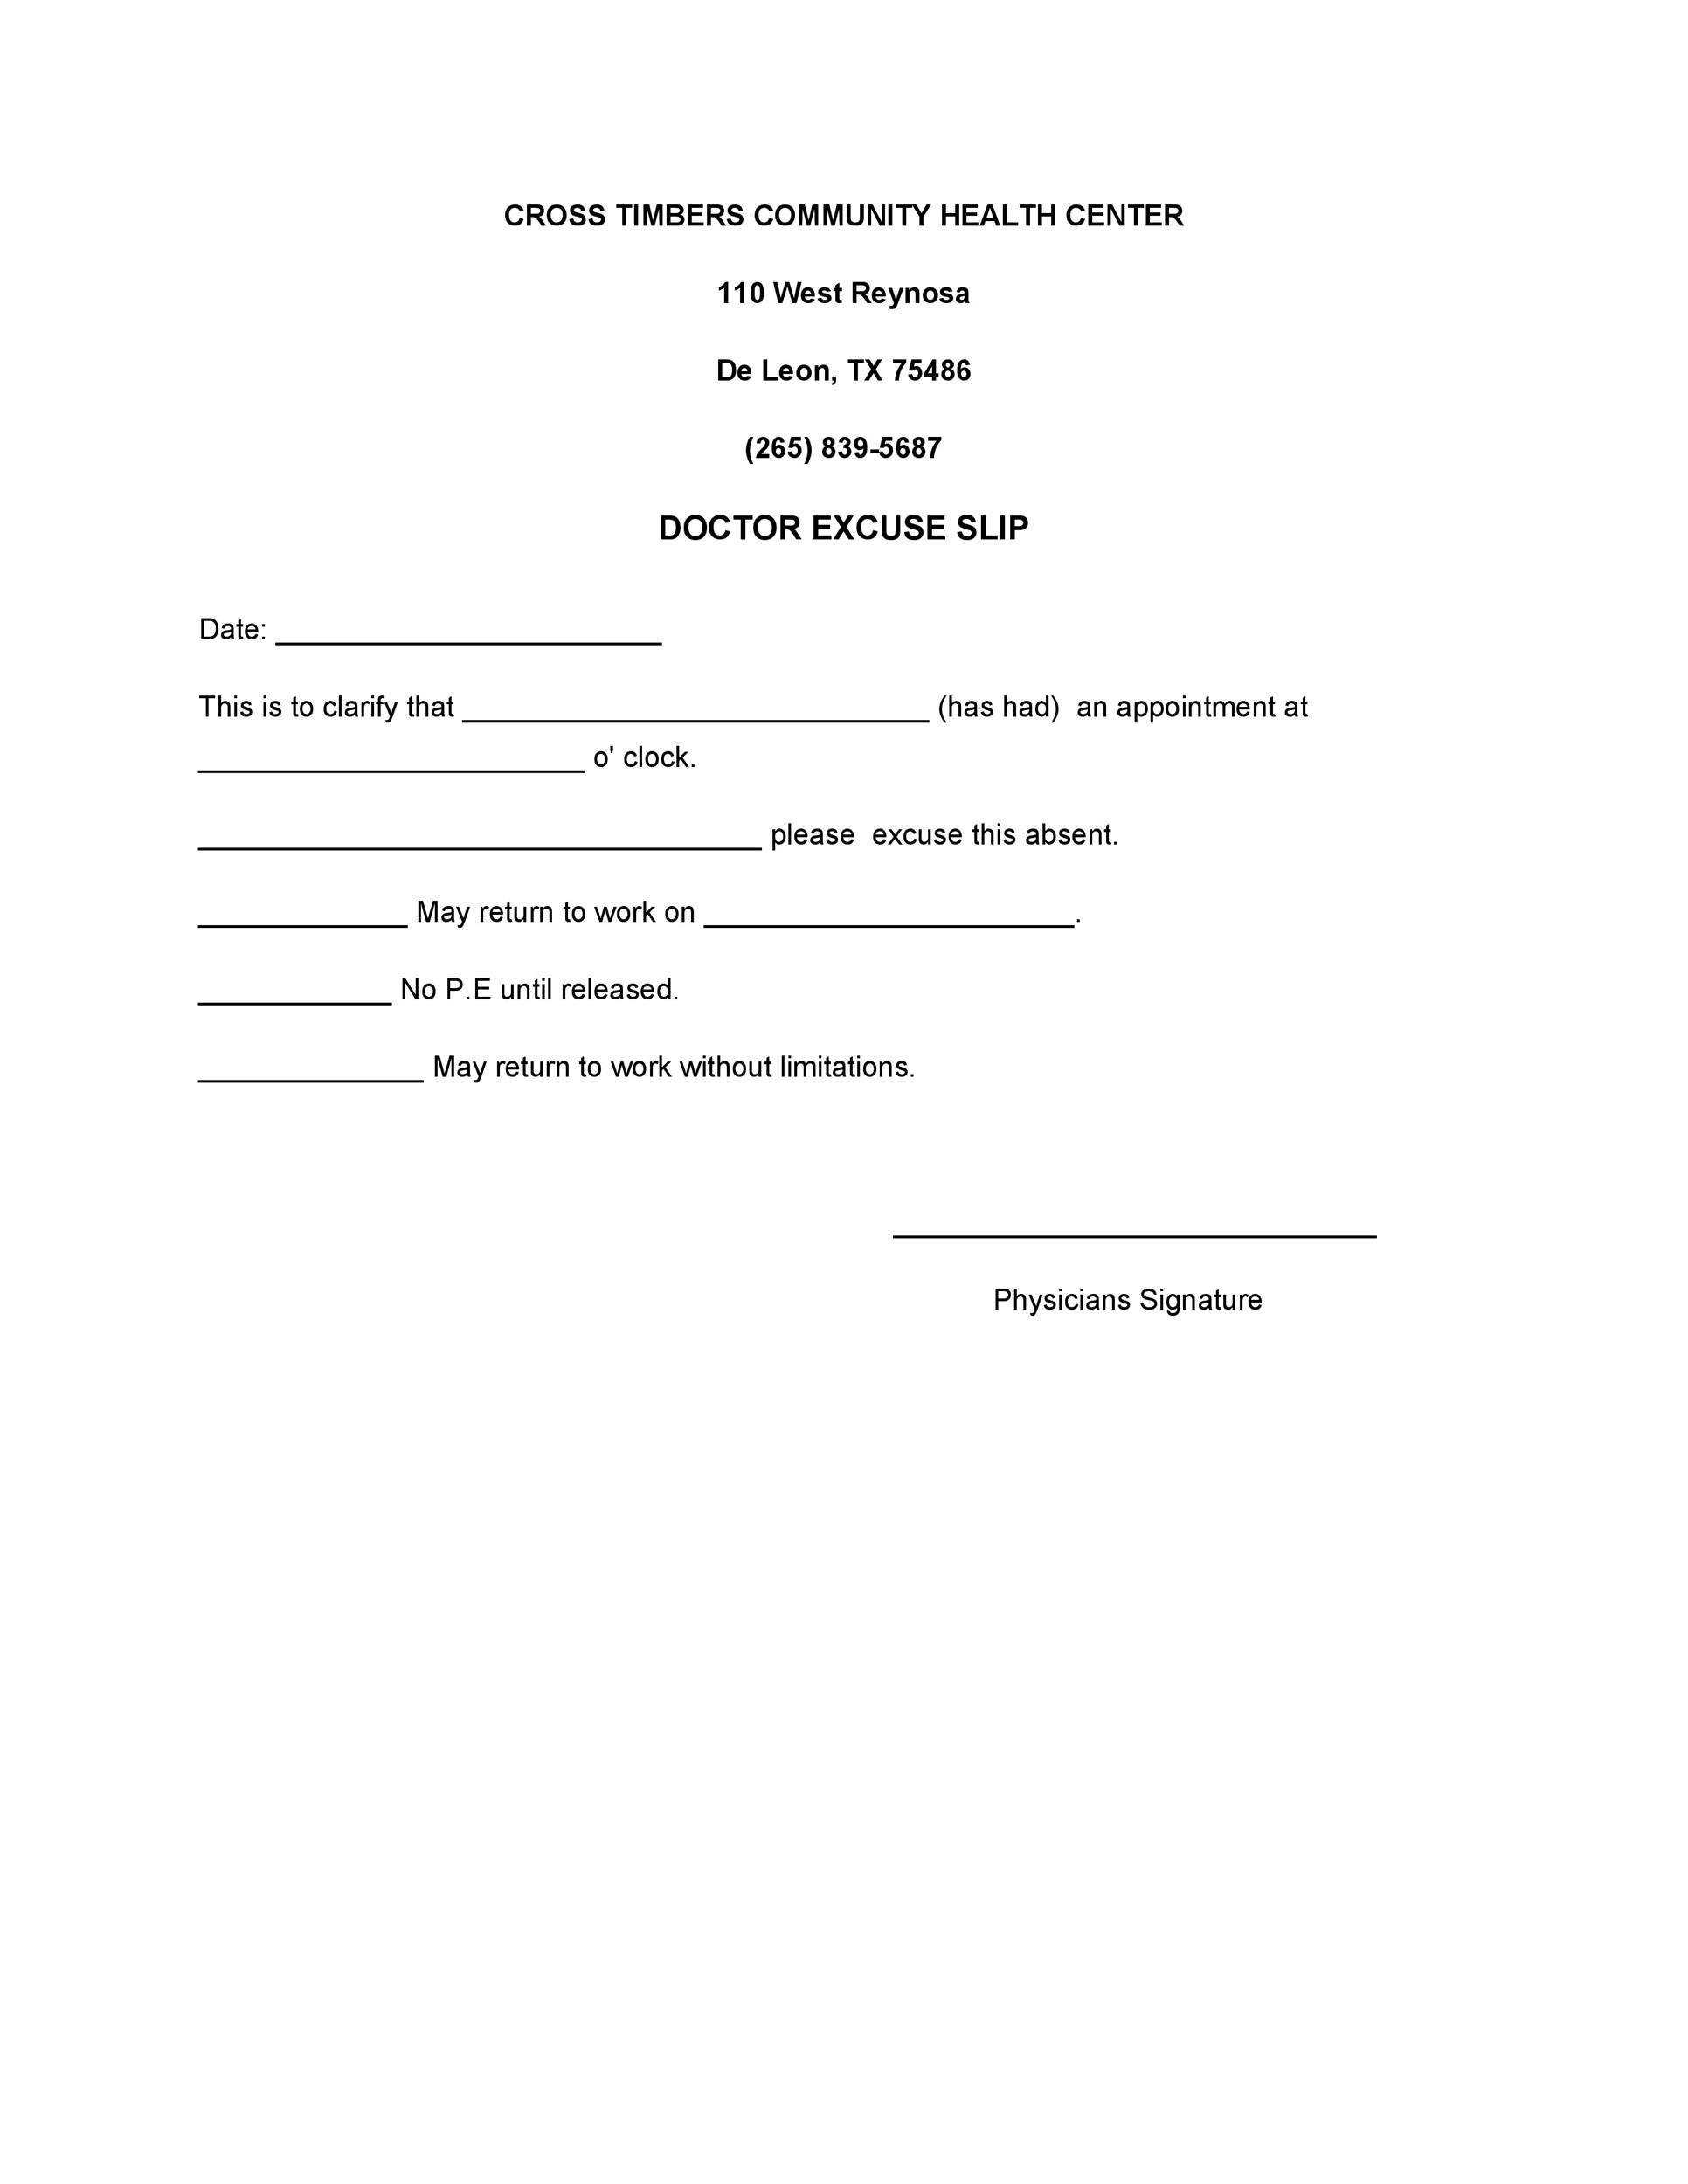 Ontario dental association fee guide pdf